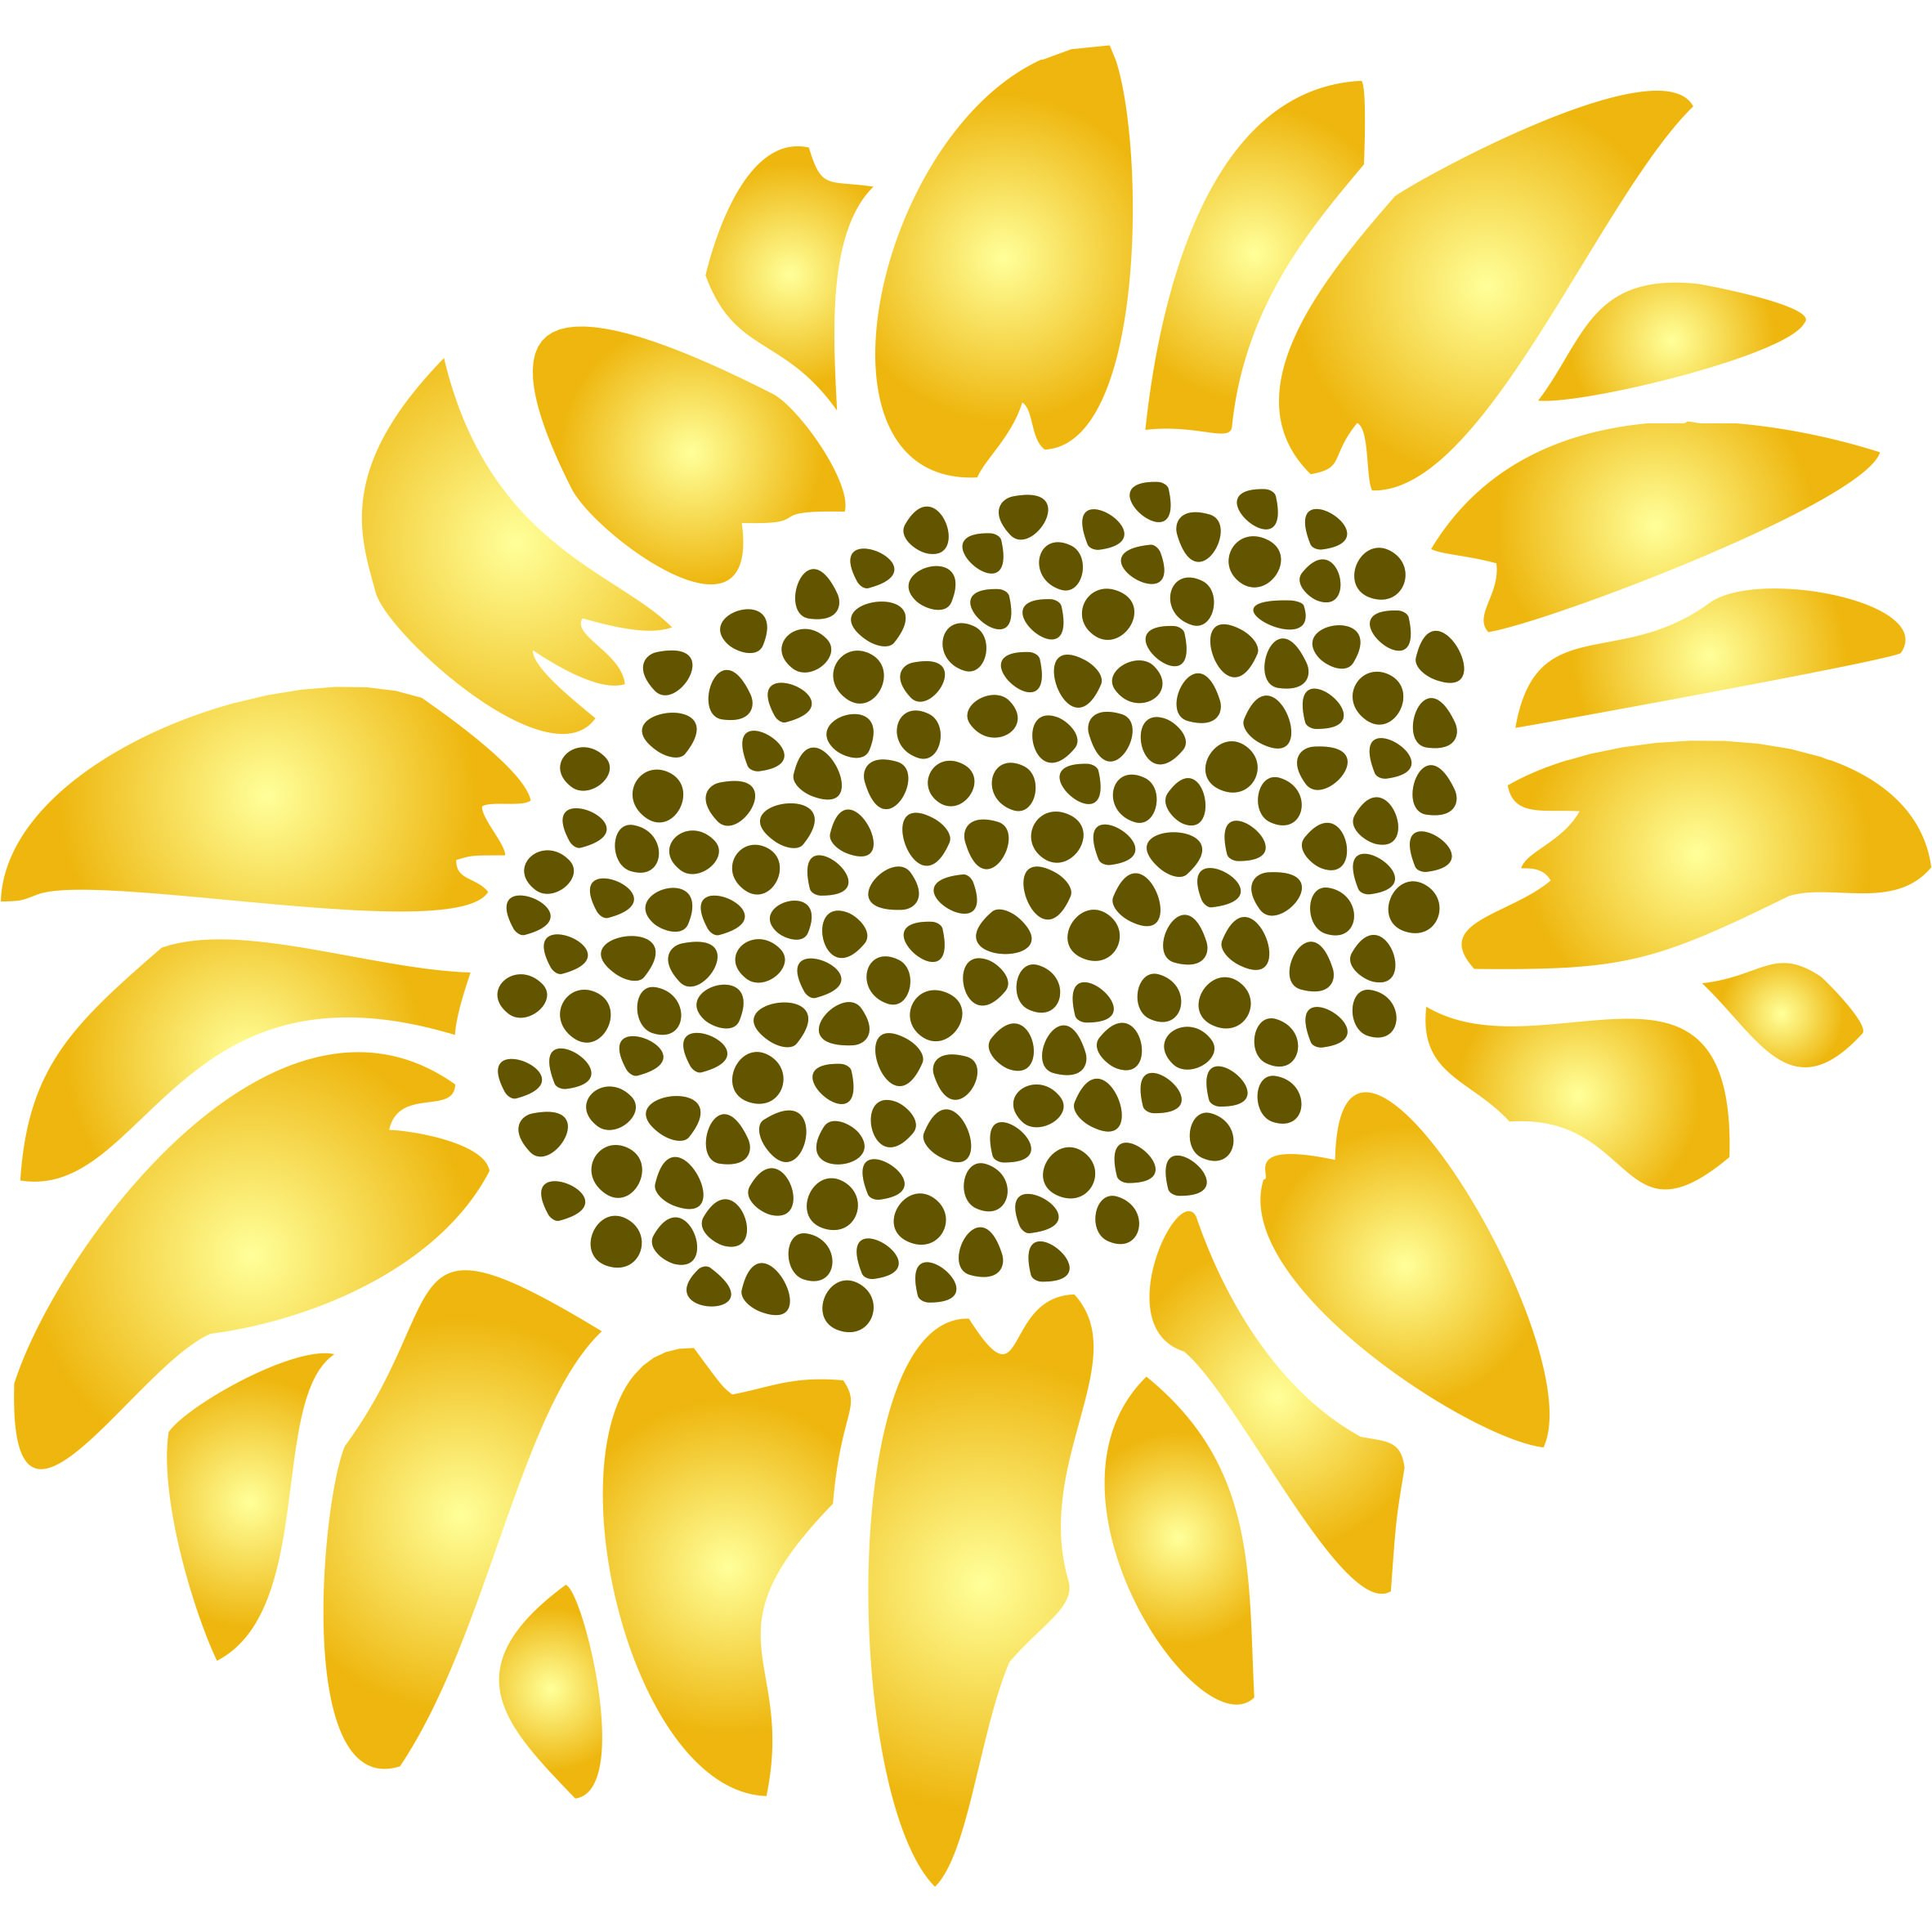 Sunflower Stencil Pattern FREE PATTERNS